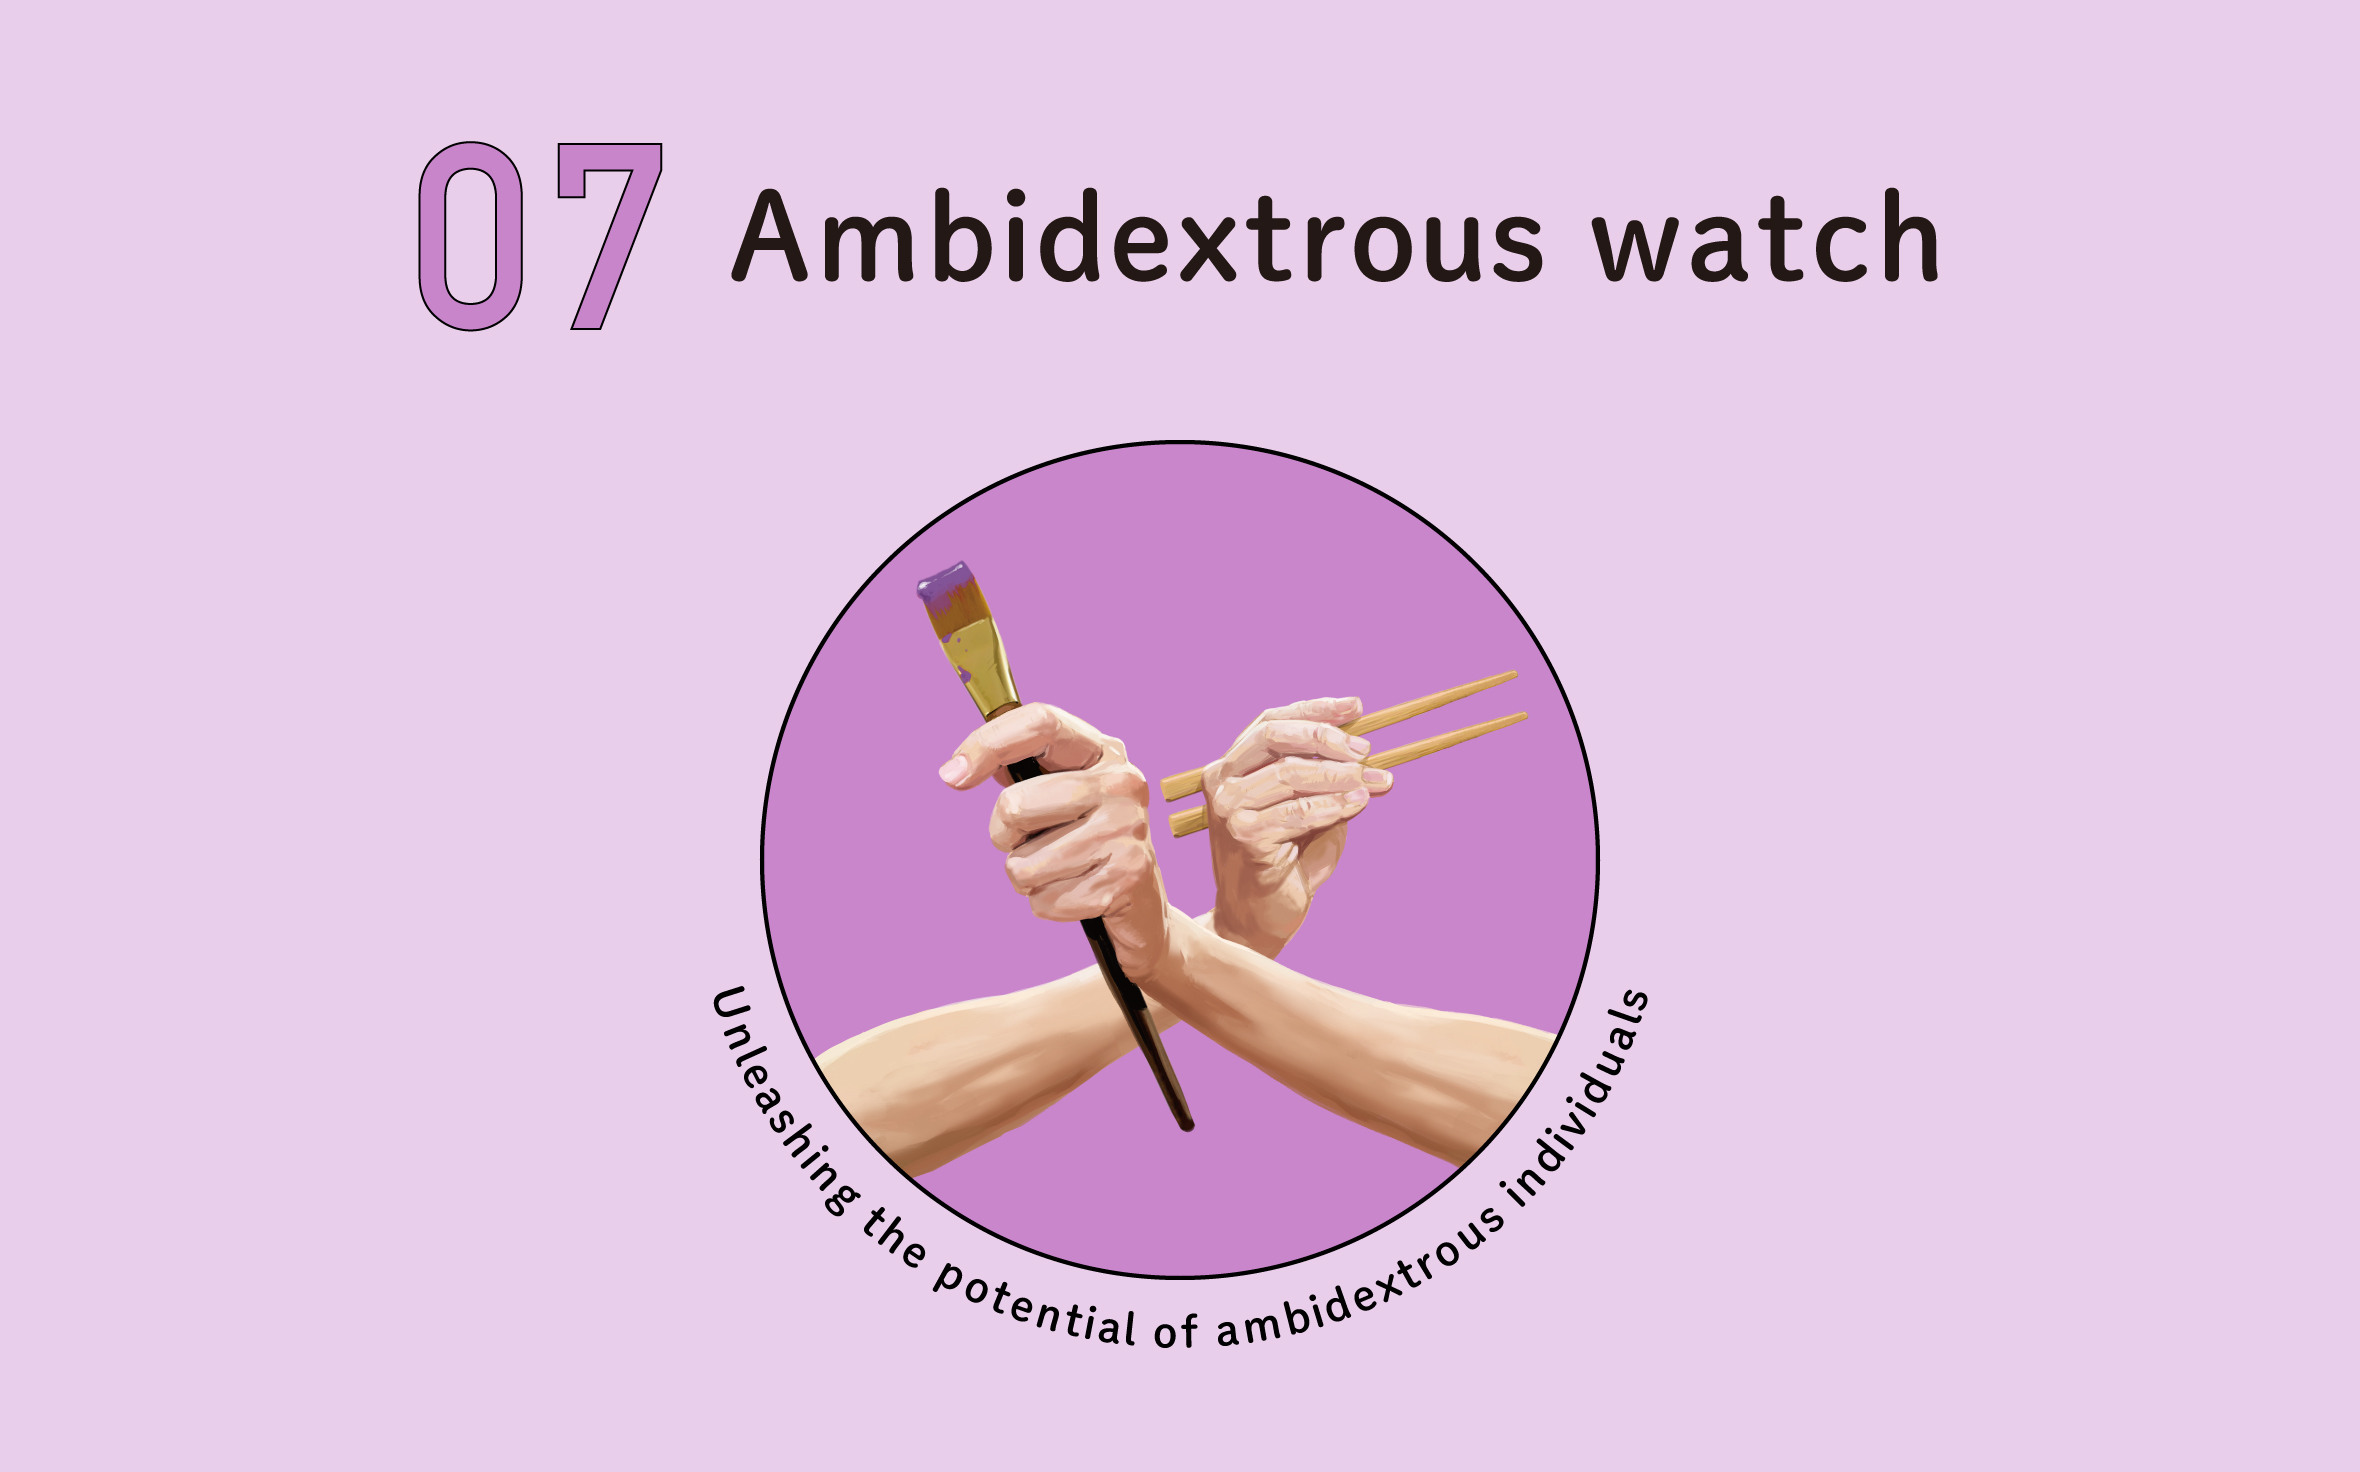 Ambidextrous watch